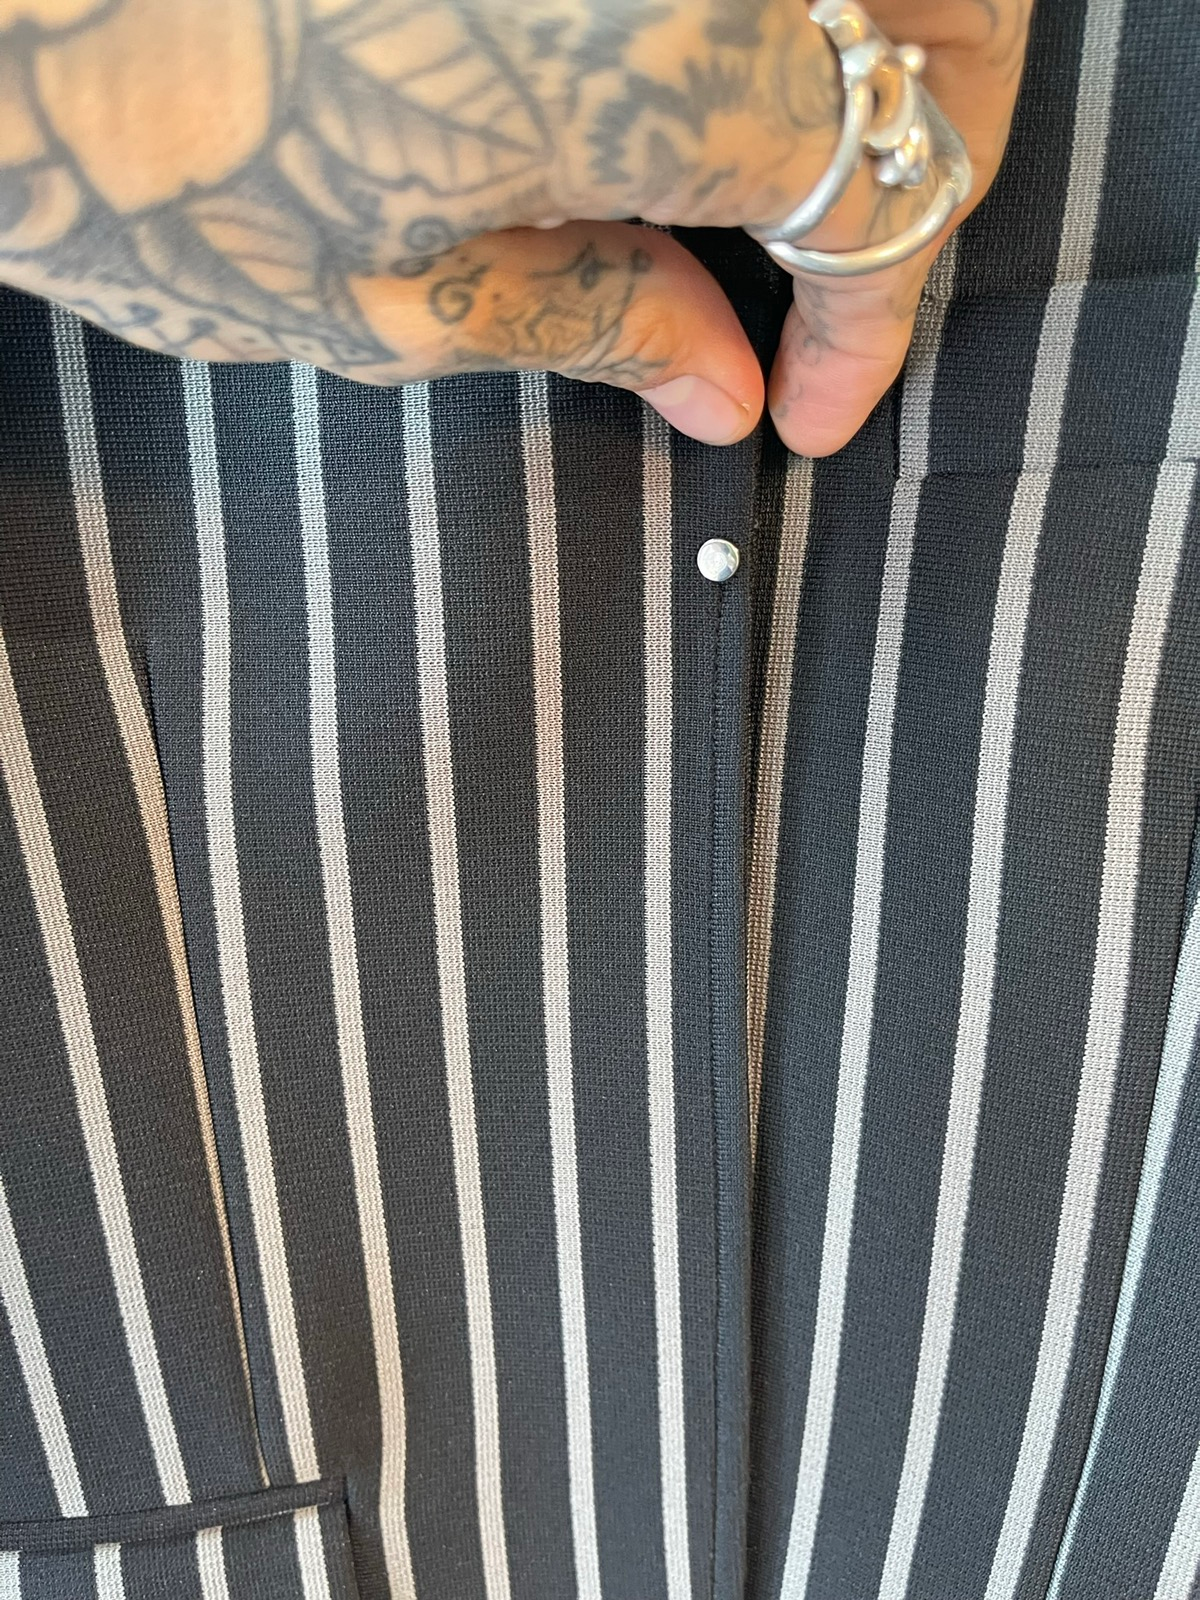 Random iDentities NEW stripped Blazer Sport Jacket US36 EU46